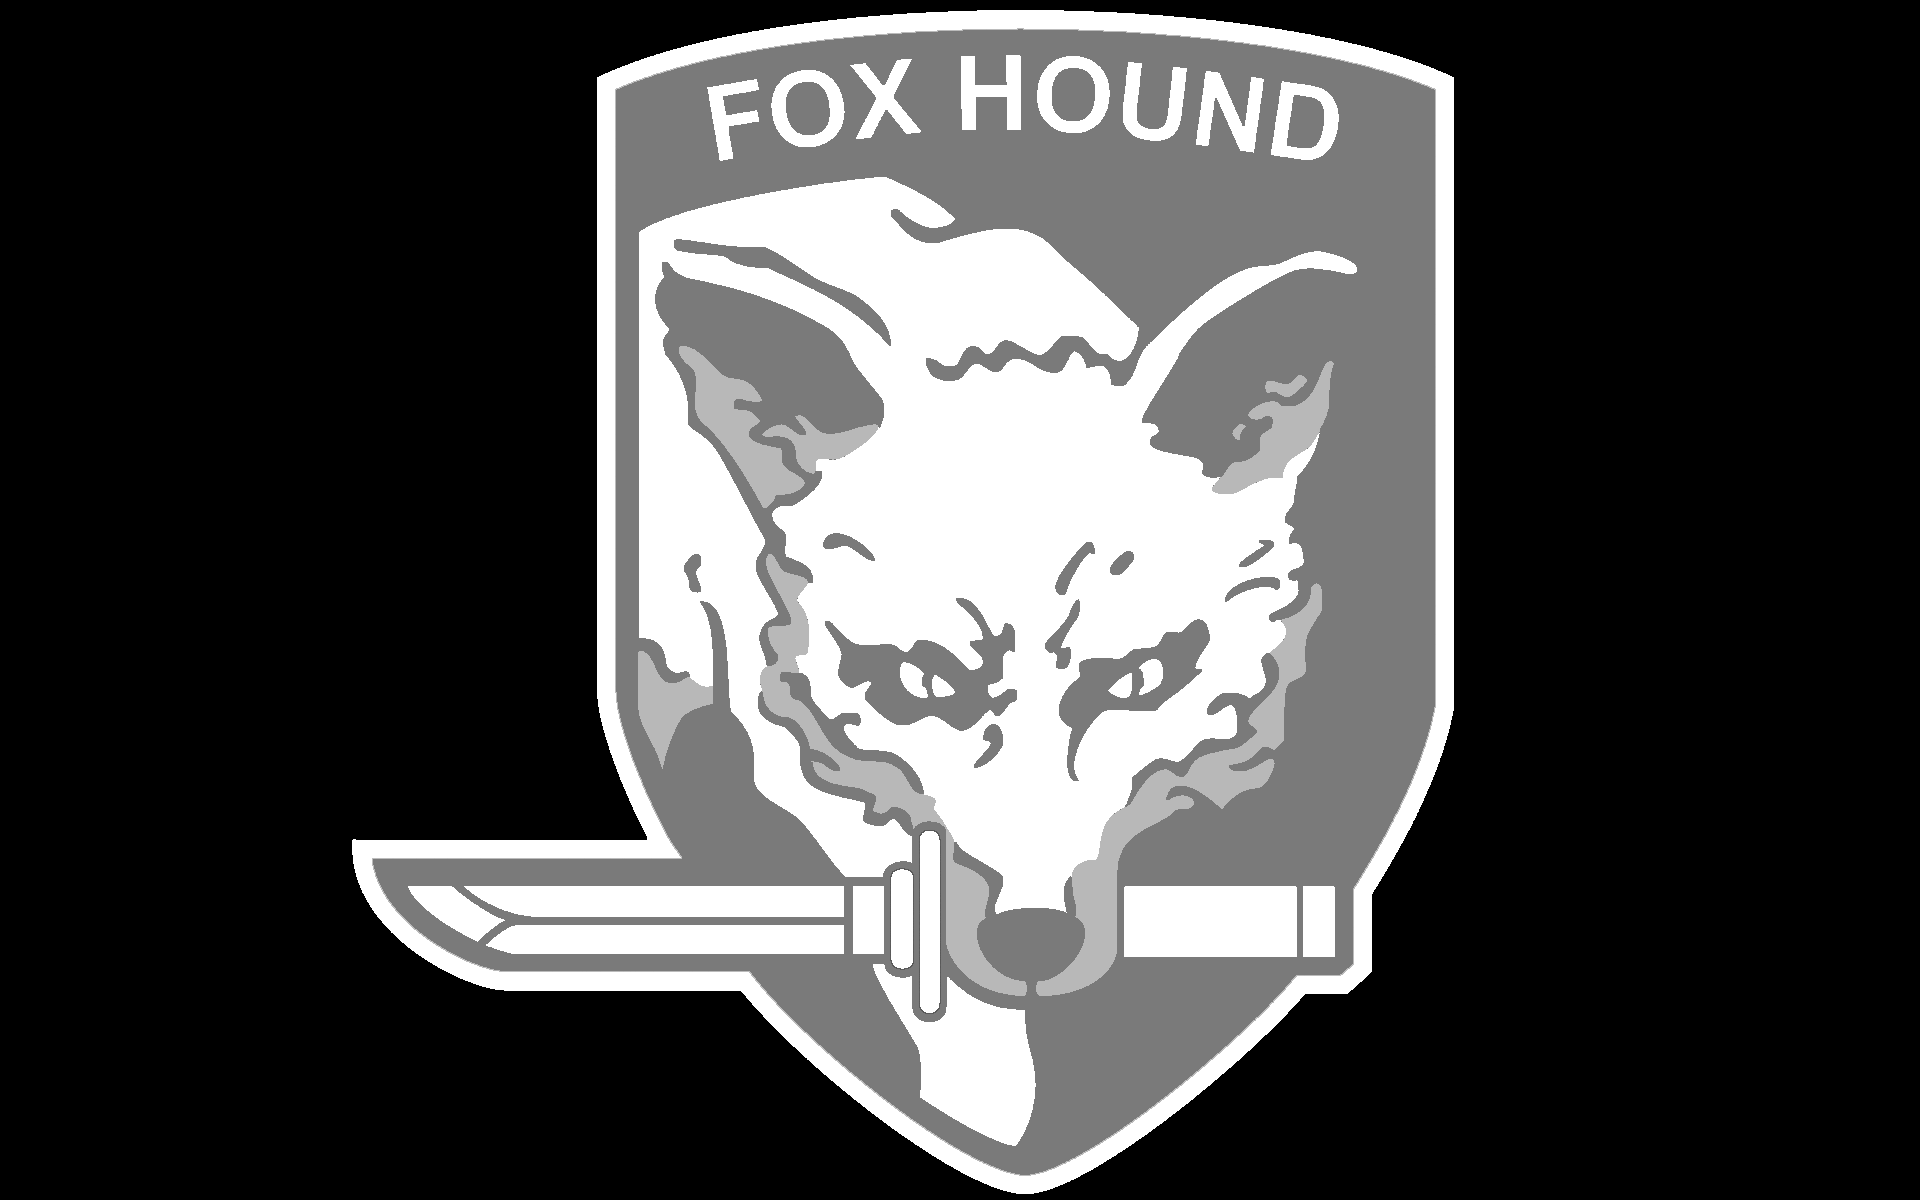 Fox Hound Wallpaper